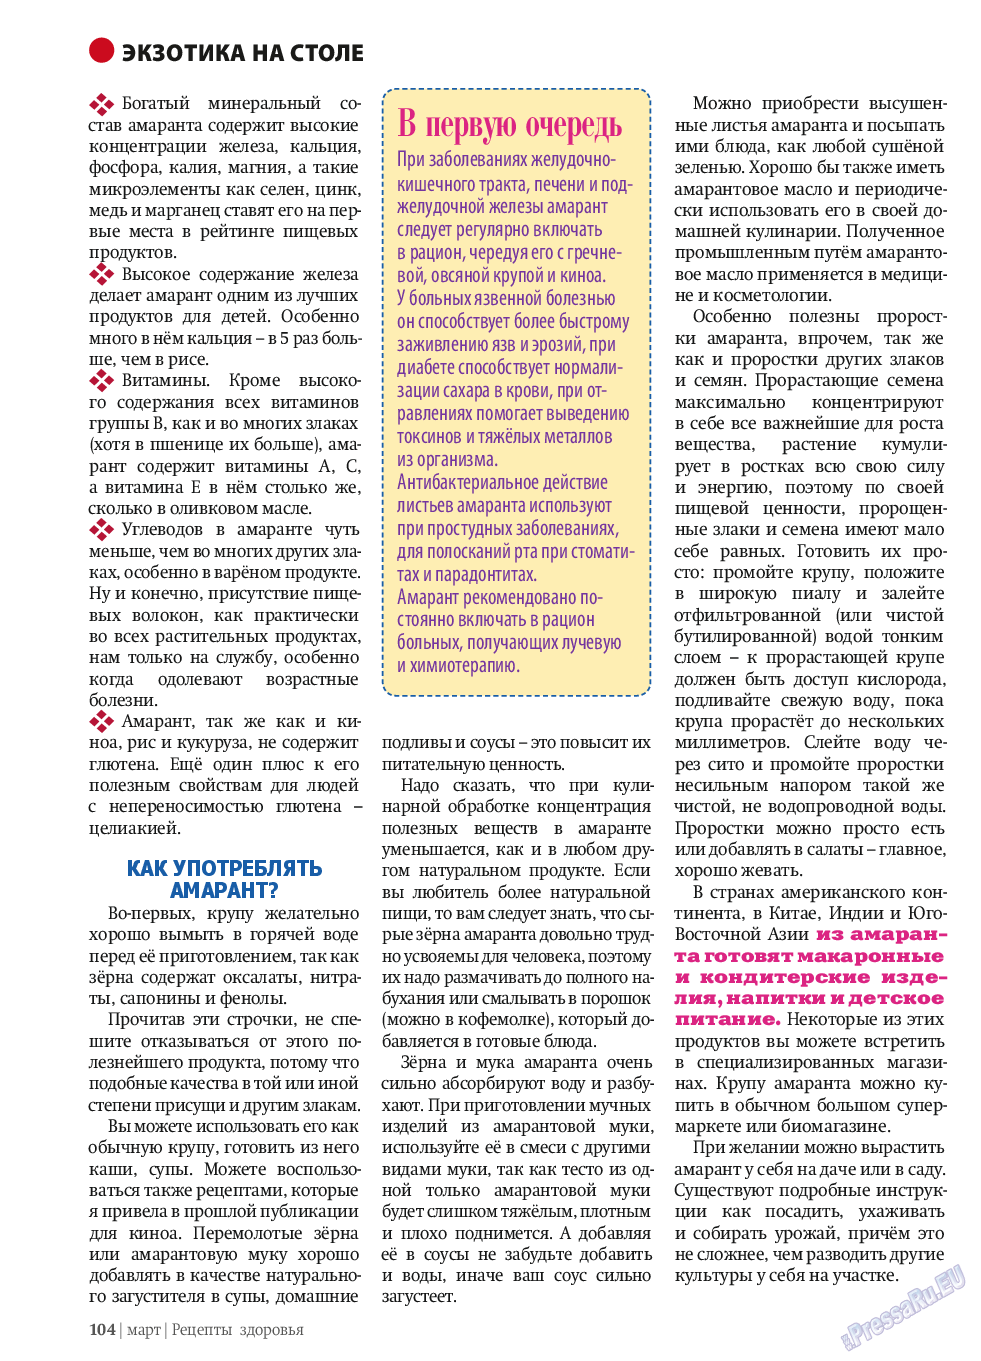 Рецепты здоровья, журнал. 2014 №58 стр.104